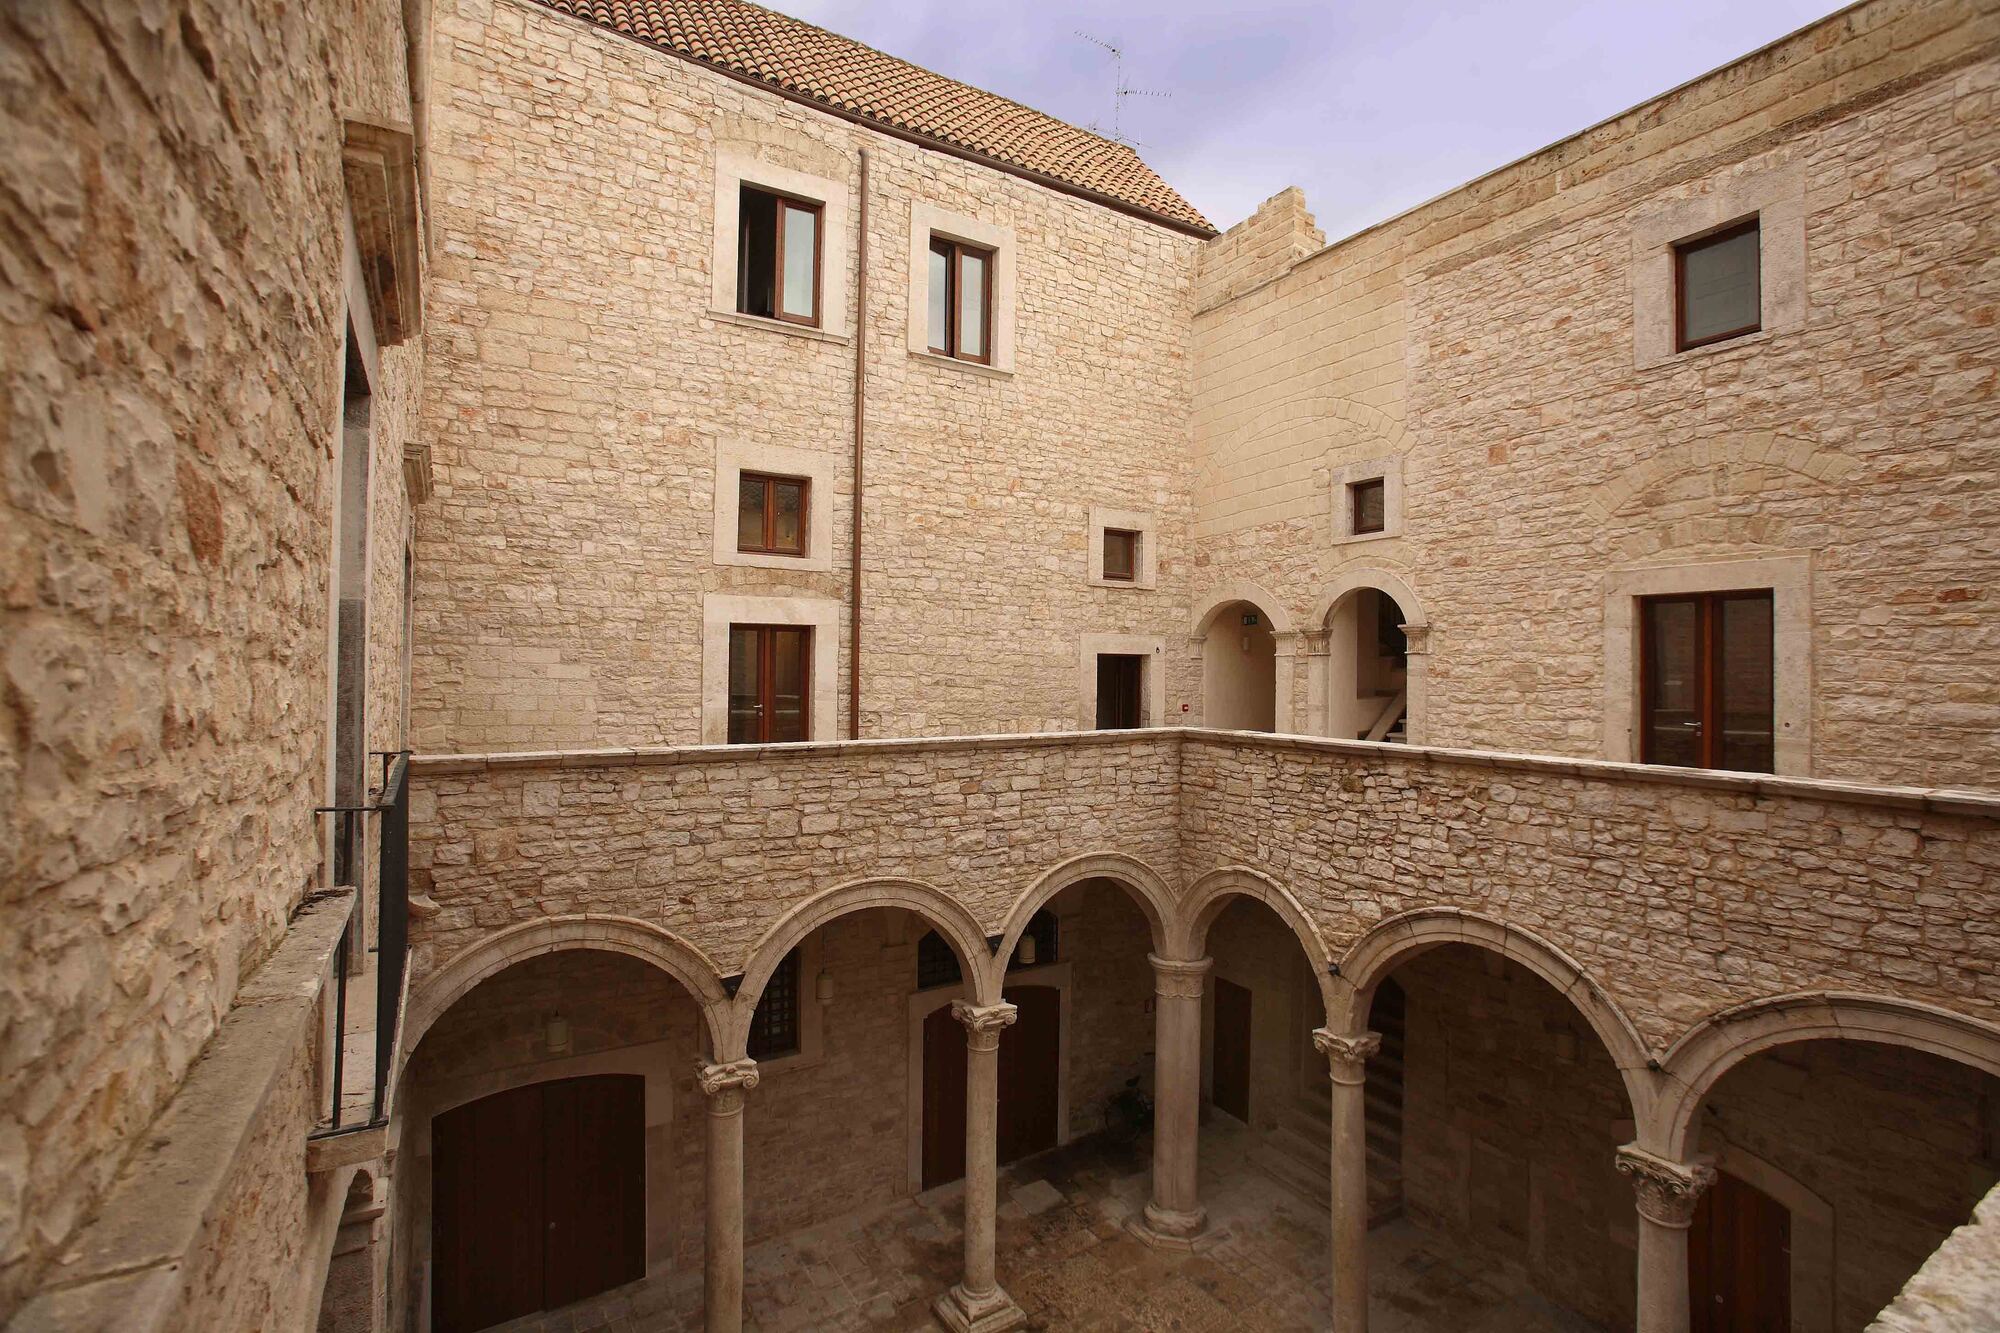 Il Palazzo Sylos-Calo di Bitonto, costruito nel 1529, è un'attrazione rinascimentale con una grande loggia e una galleria d'arte.